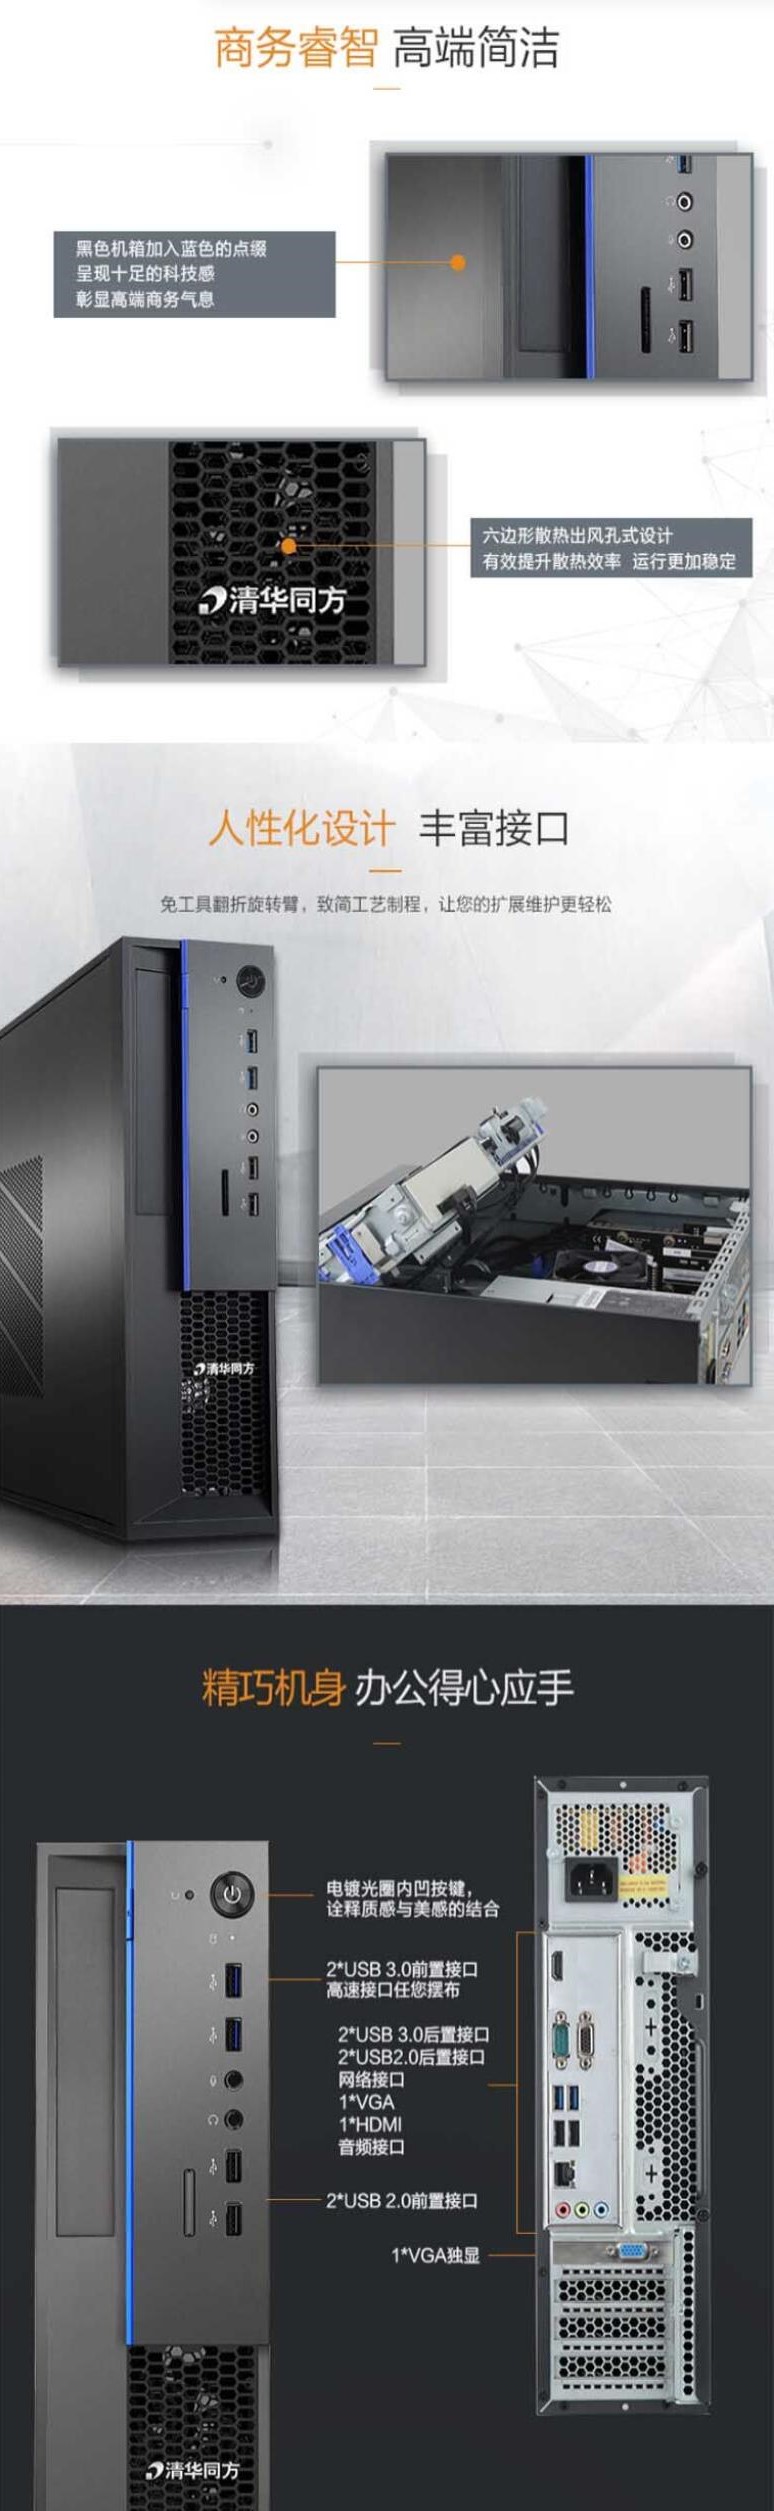 清华同方 超翔Z8307 台式机（龙芯3A3000 8G 256G SSD 2G独显 DVDRW 中标麒麟 23.8英寸） (图6)